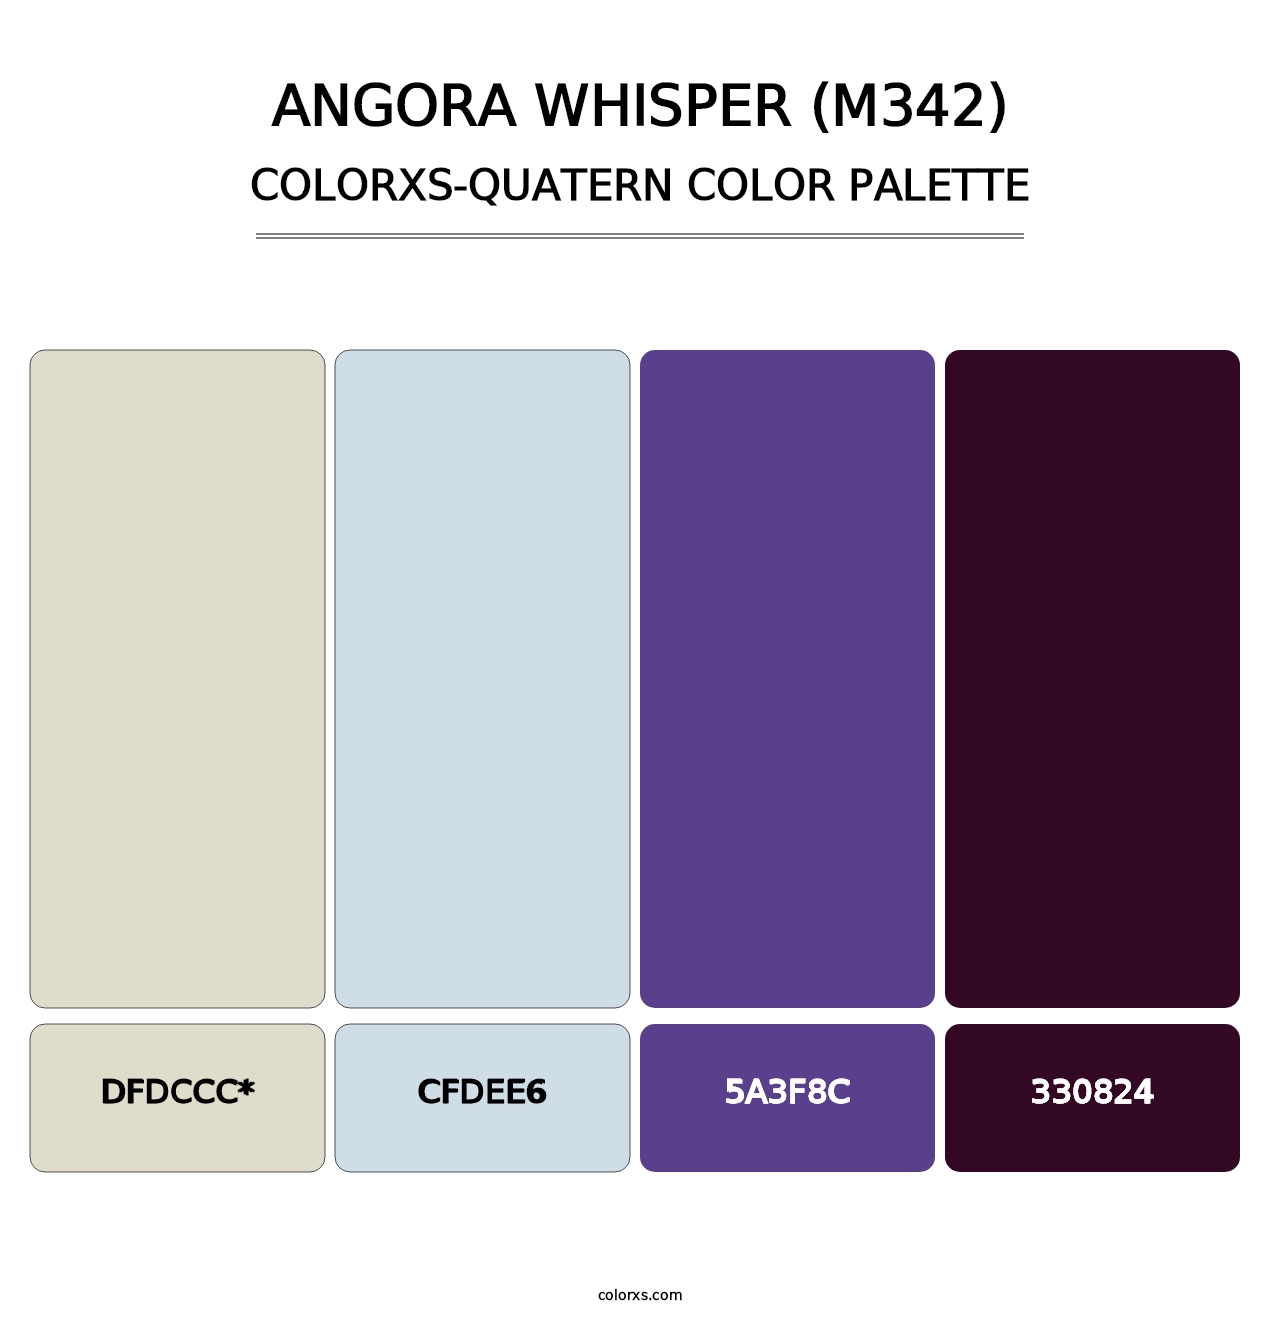 Angora Whisper (M342) - Colorxs Quatern Palette